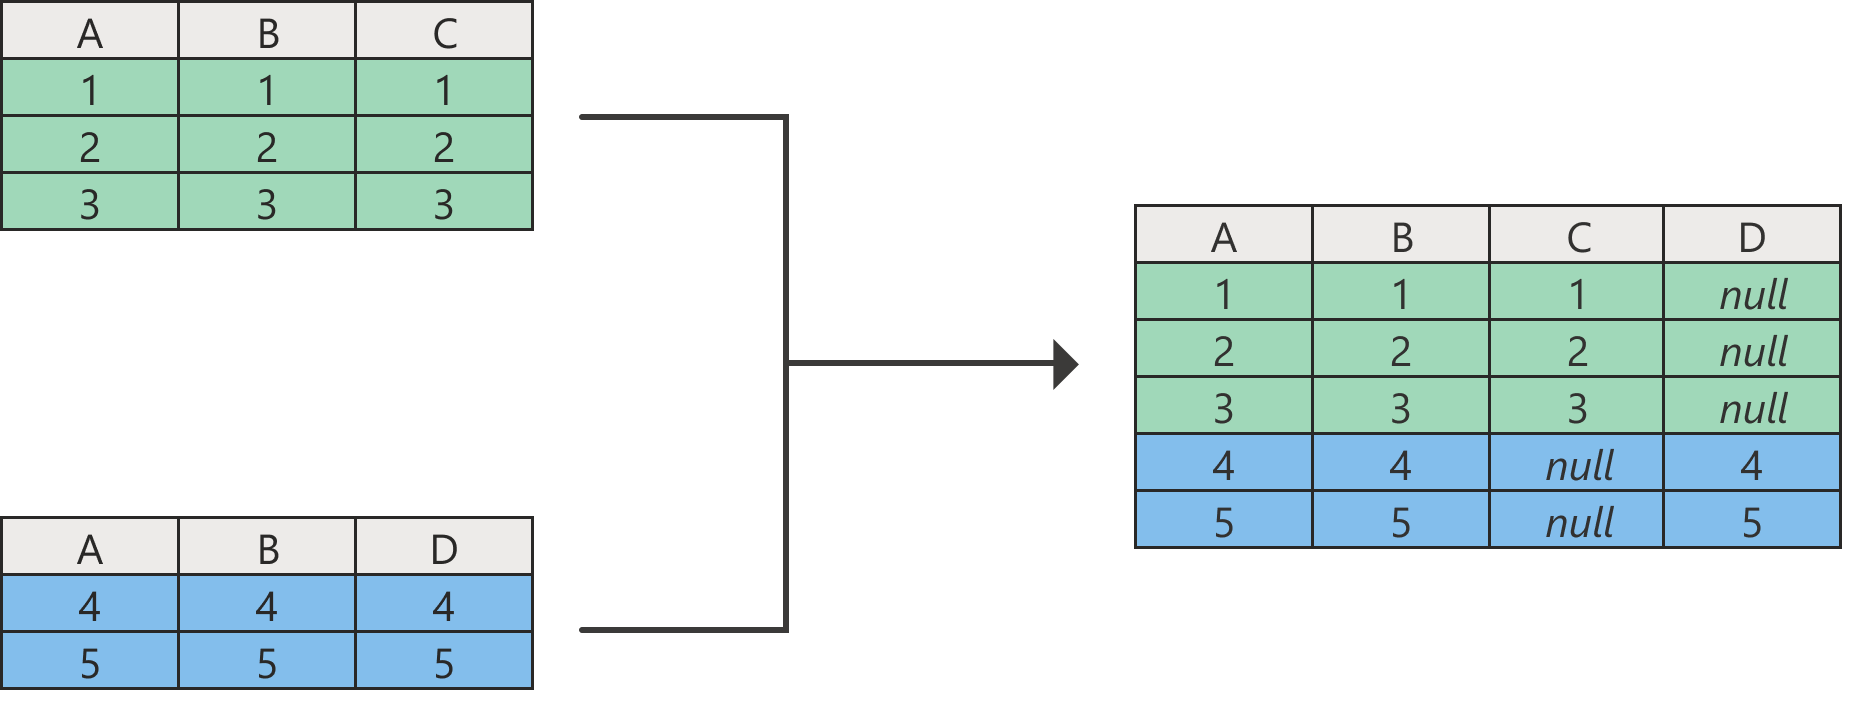 Схема, показывающая результат операции добавления со значениями NULL в столбцах, которые не существуют в одной из исходных таблиц.